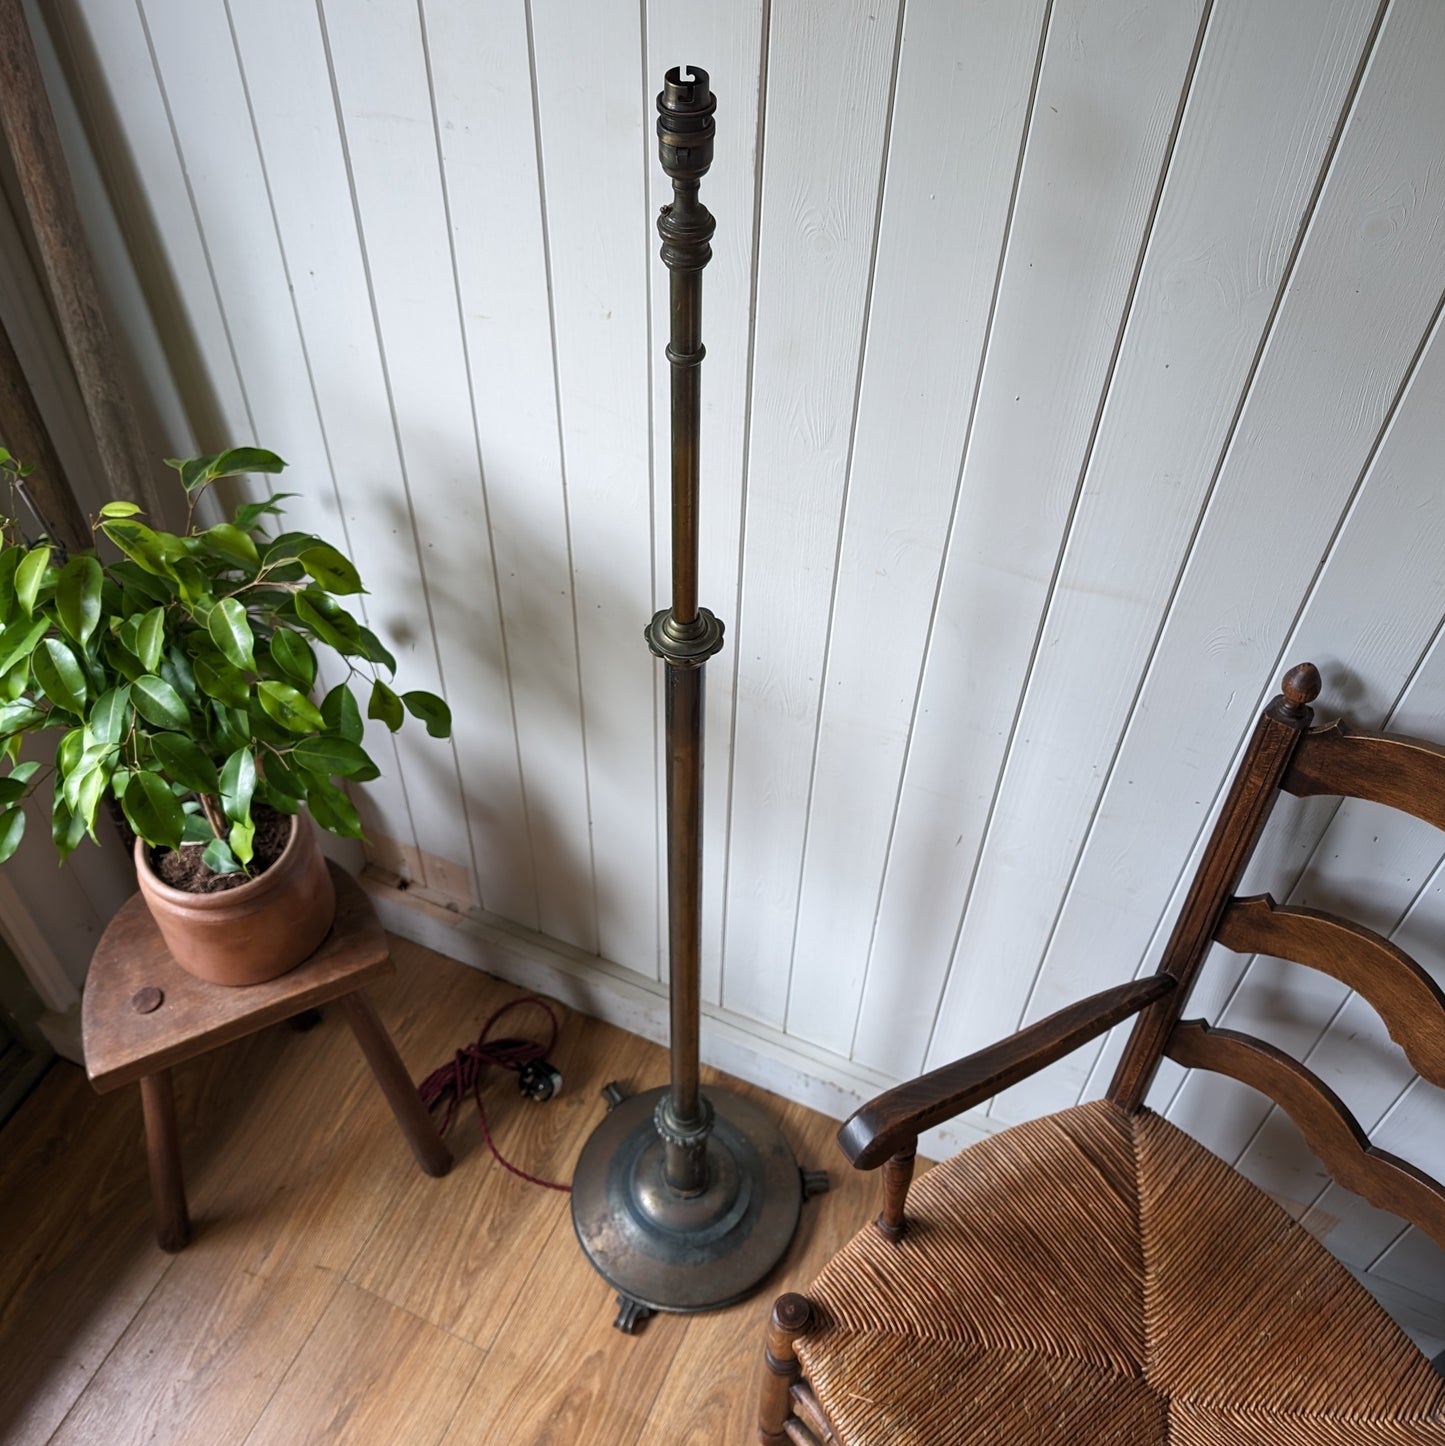 Antique Height Adjustable Floor Lamp